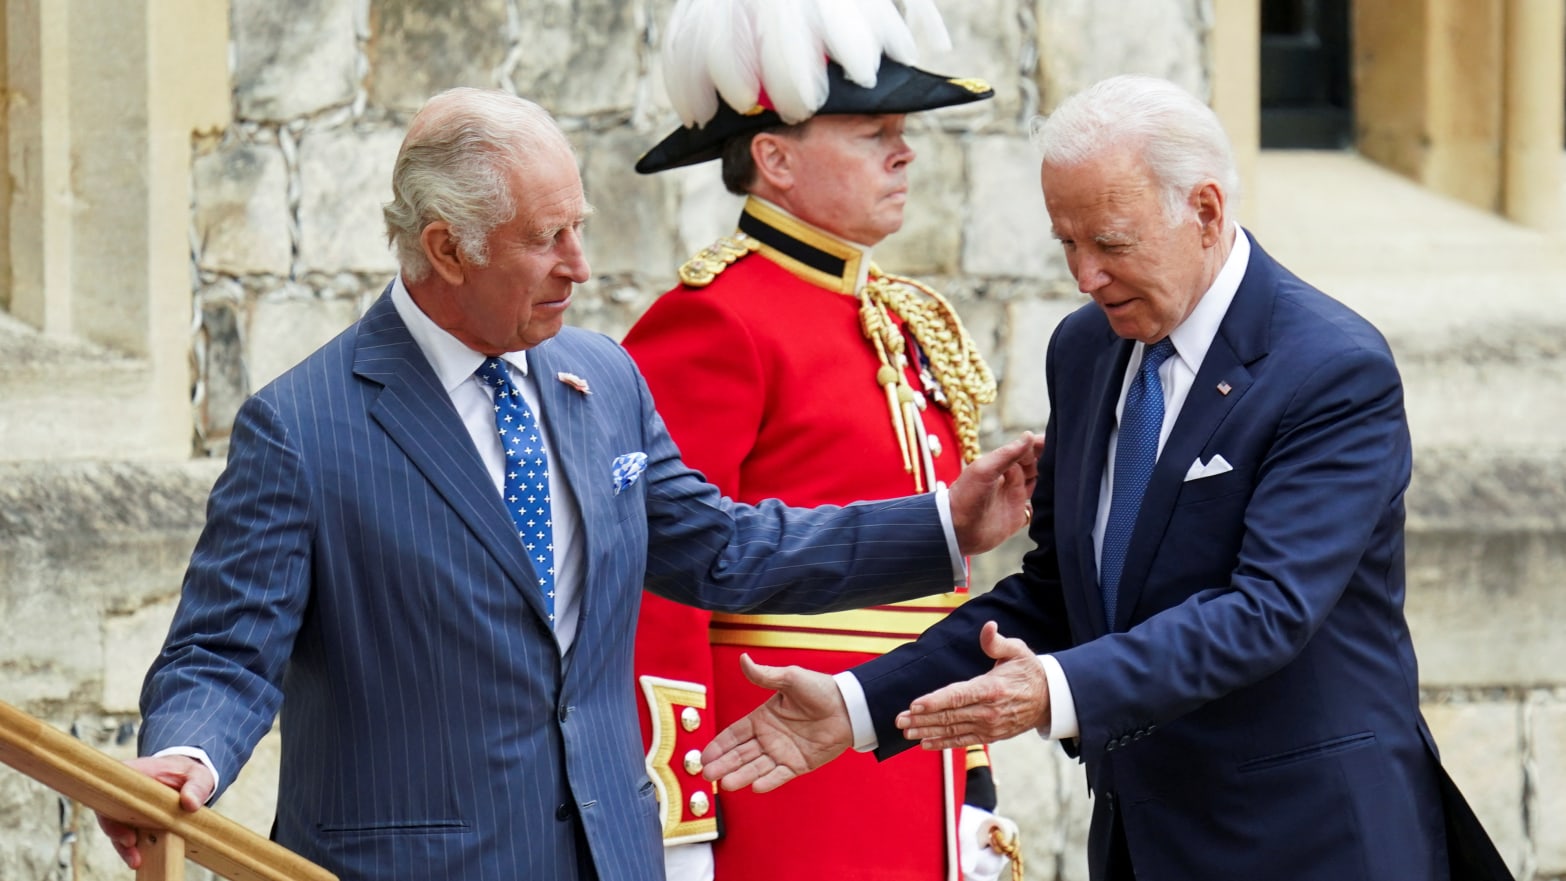 President Biden met King Charles